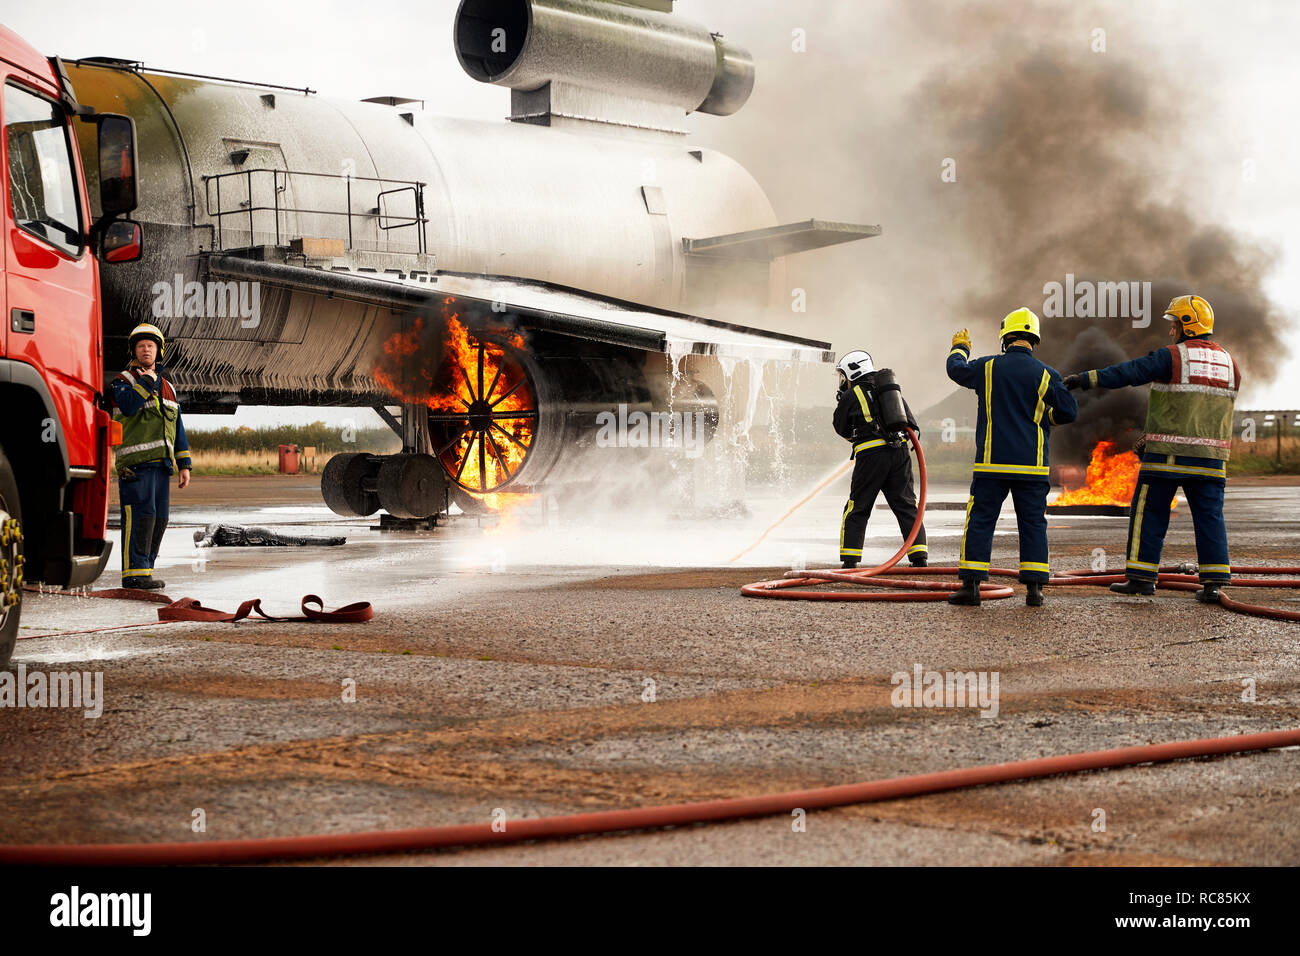 Firemen training, spraying water at mock airplane engine Stock Photo